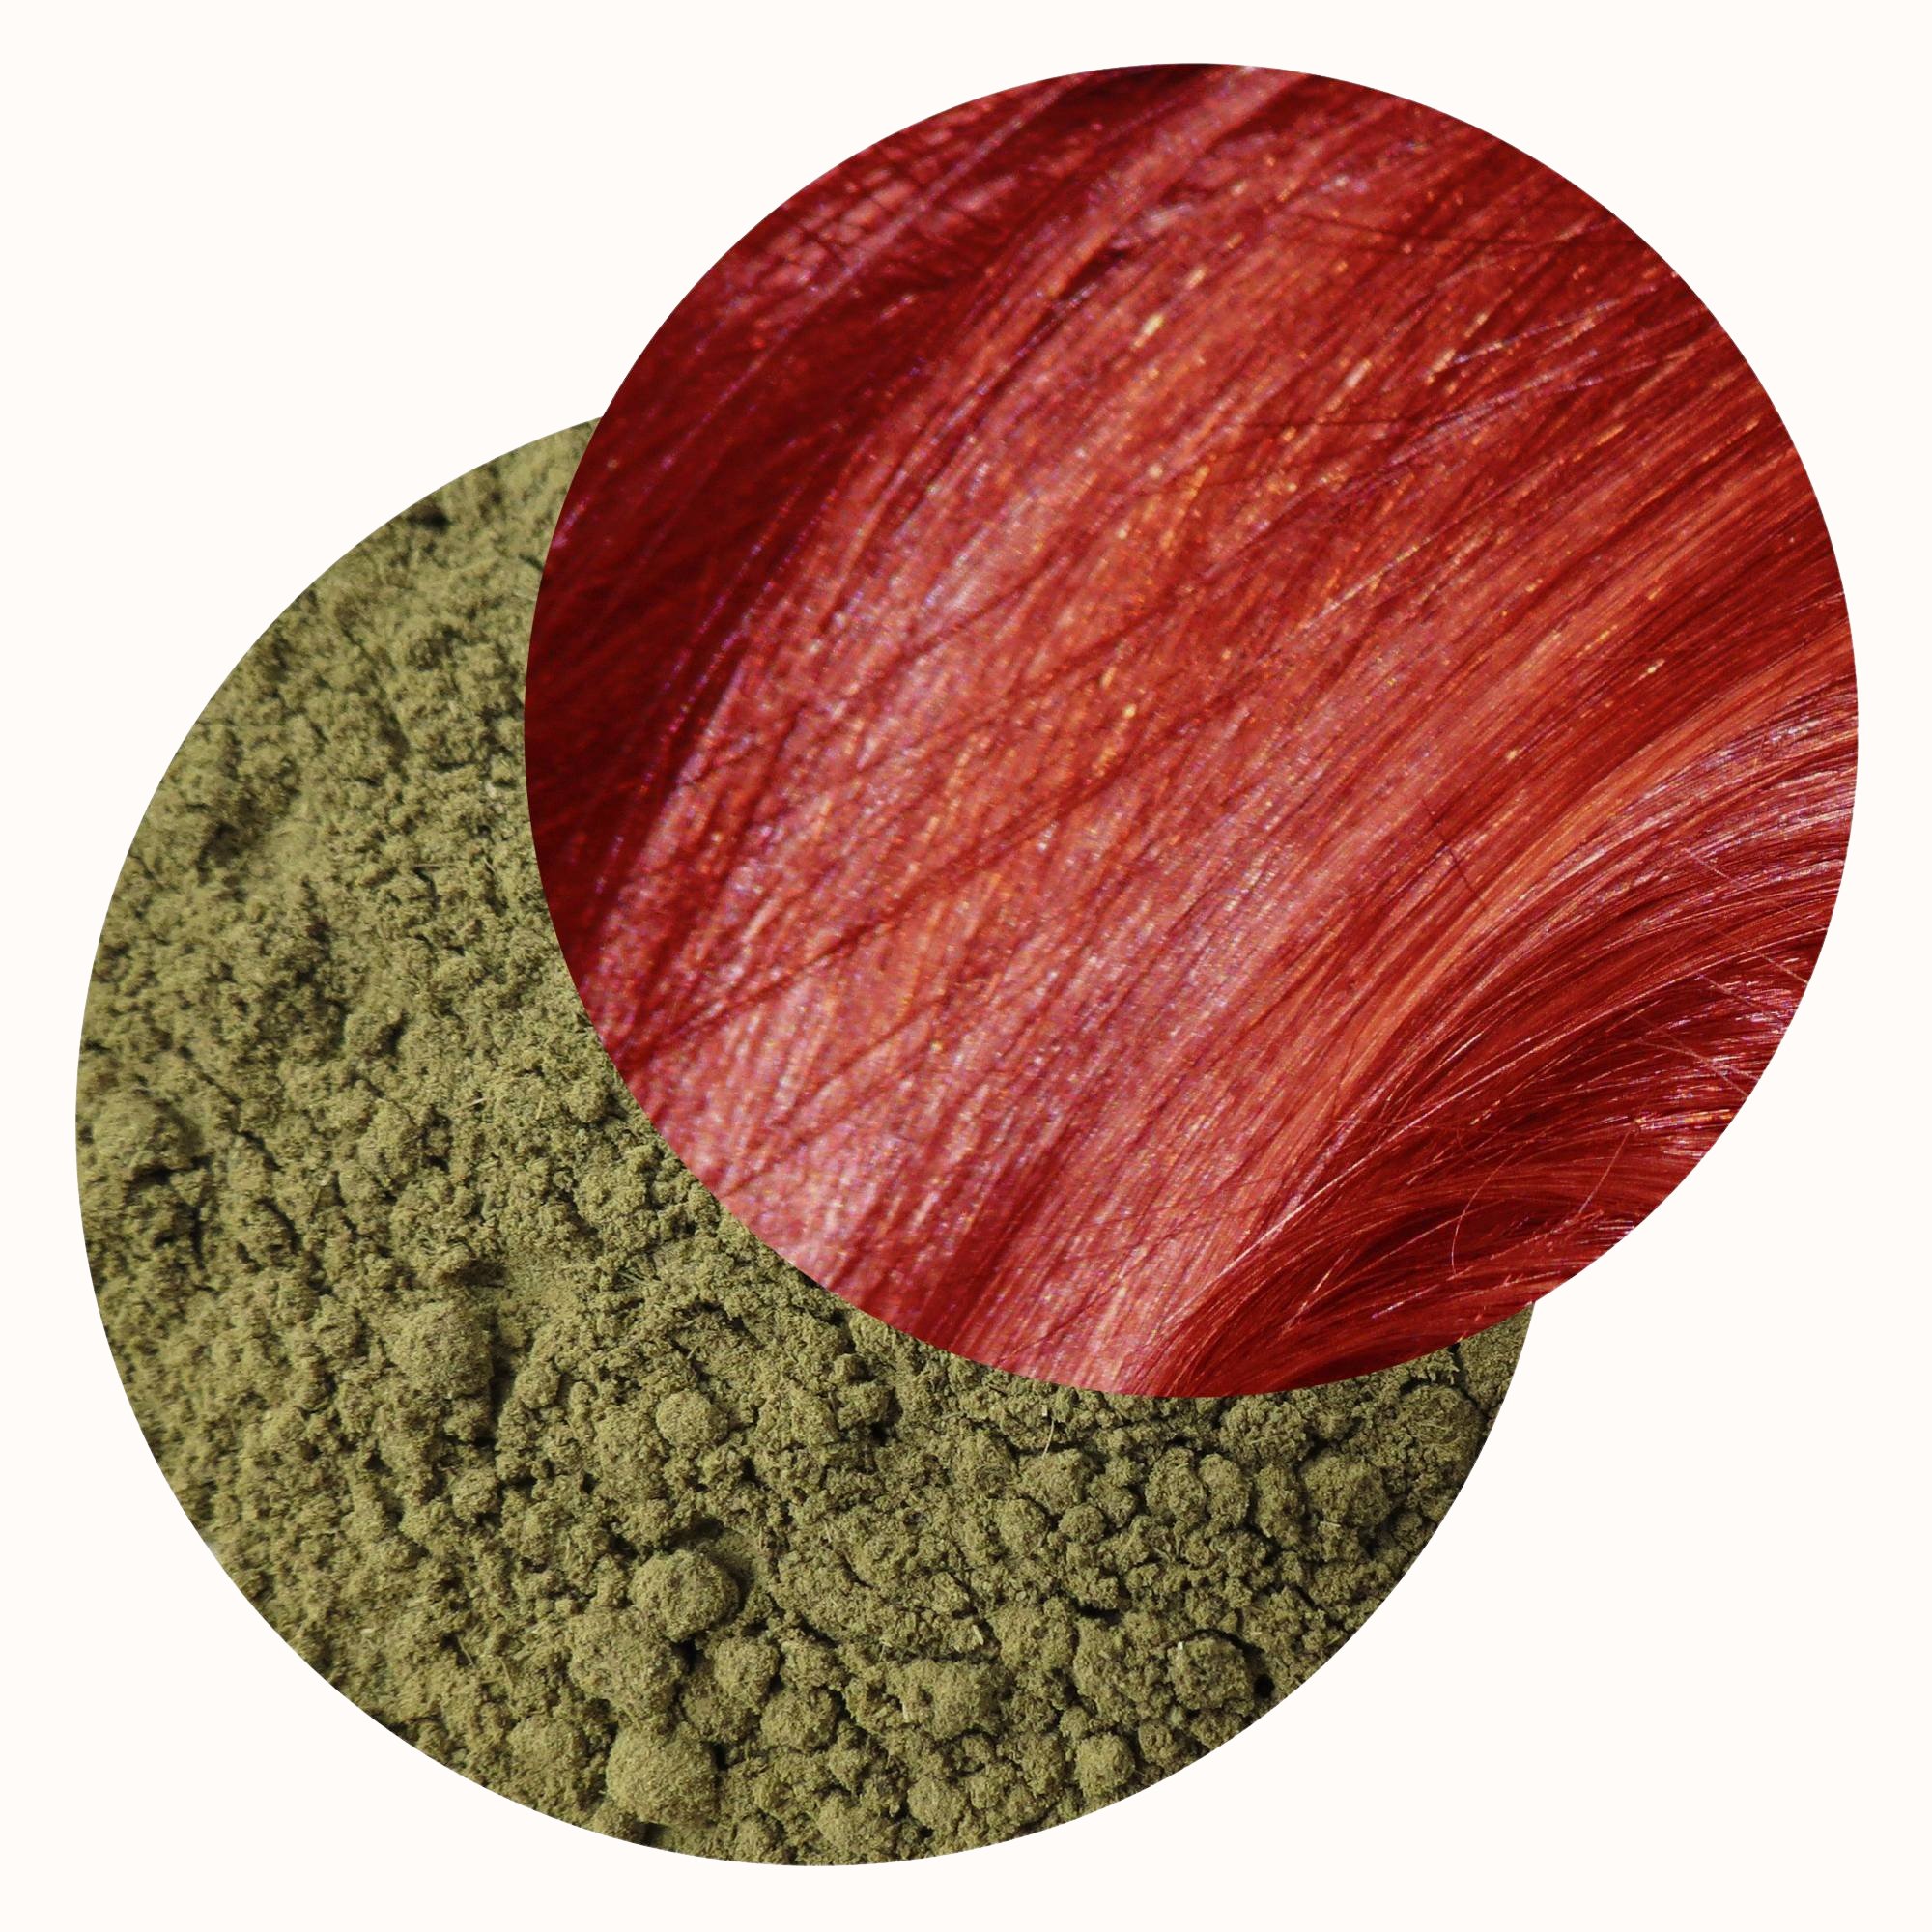 Henné rosso dello Yemen - Tinta per capelli vegetale